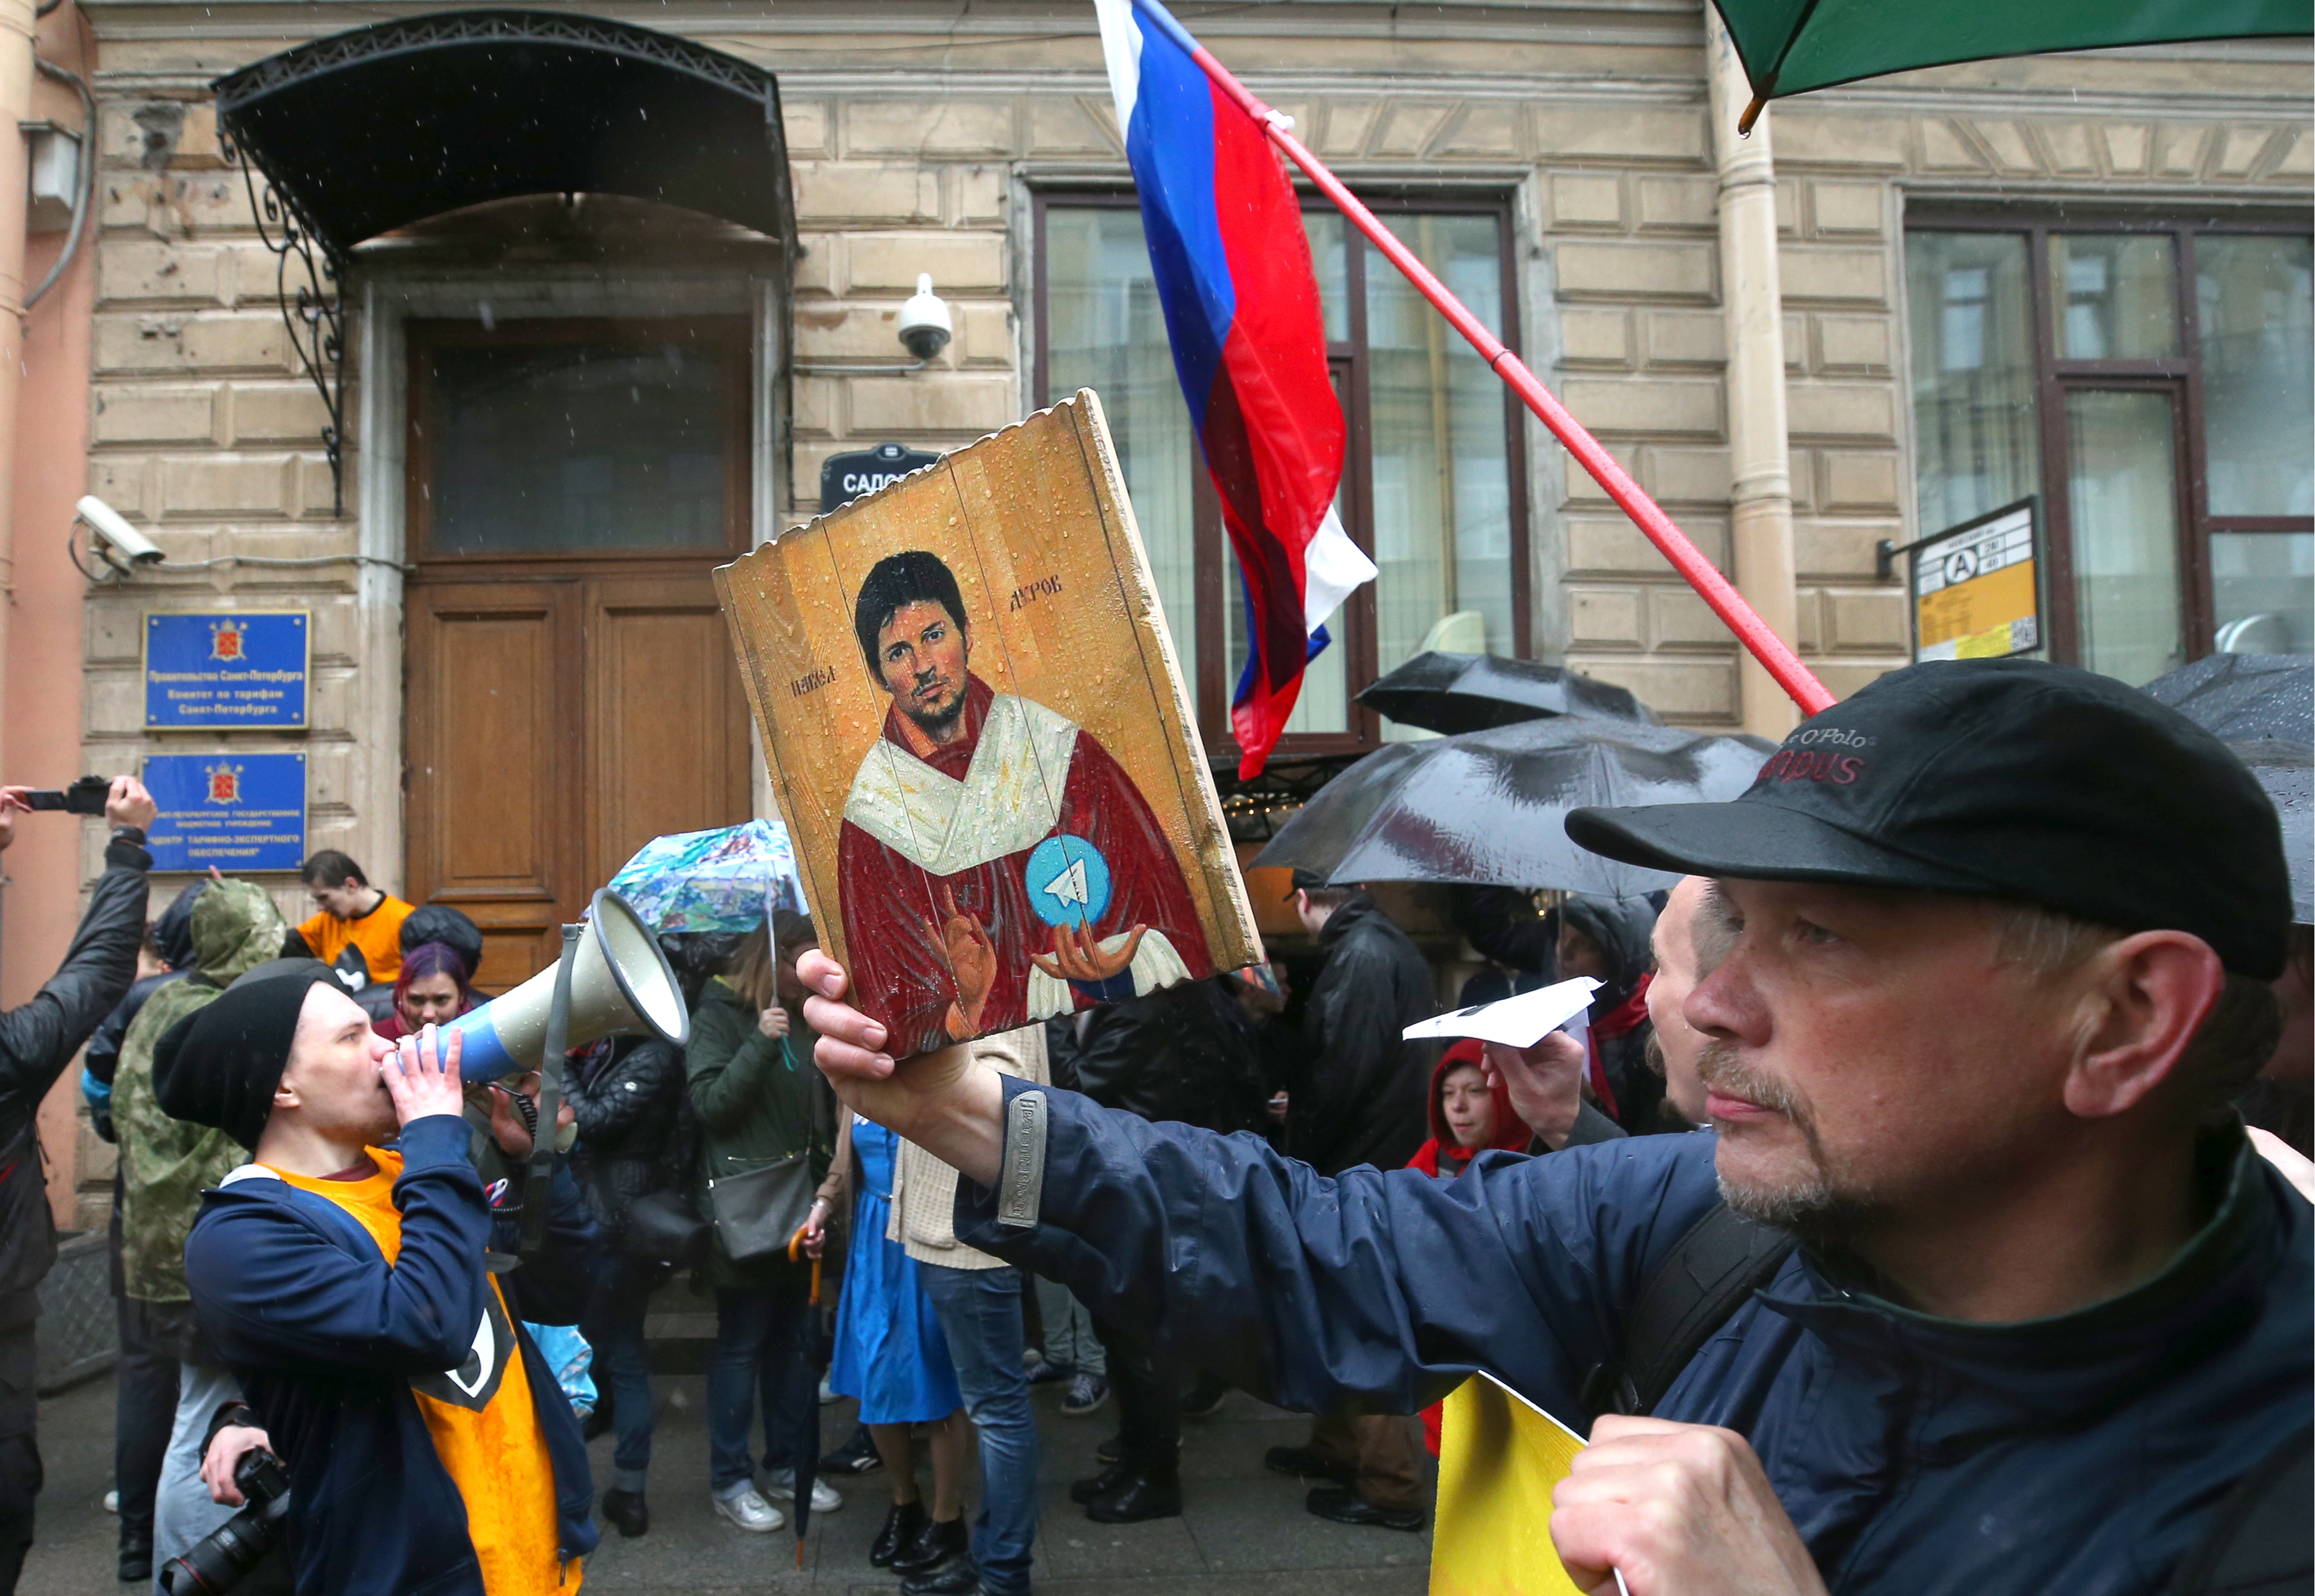 Protesty w Sankt Petersburgu. Na pierwszym planie jeden z uczestników z ikoną z wizerunkiem Pawła Durowa, maj 2021 r.